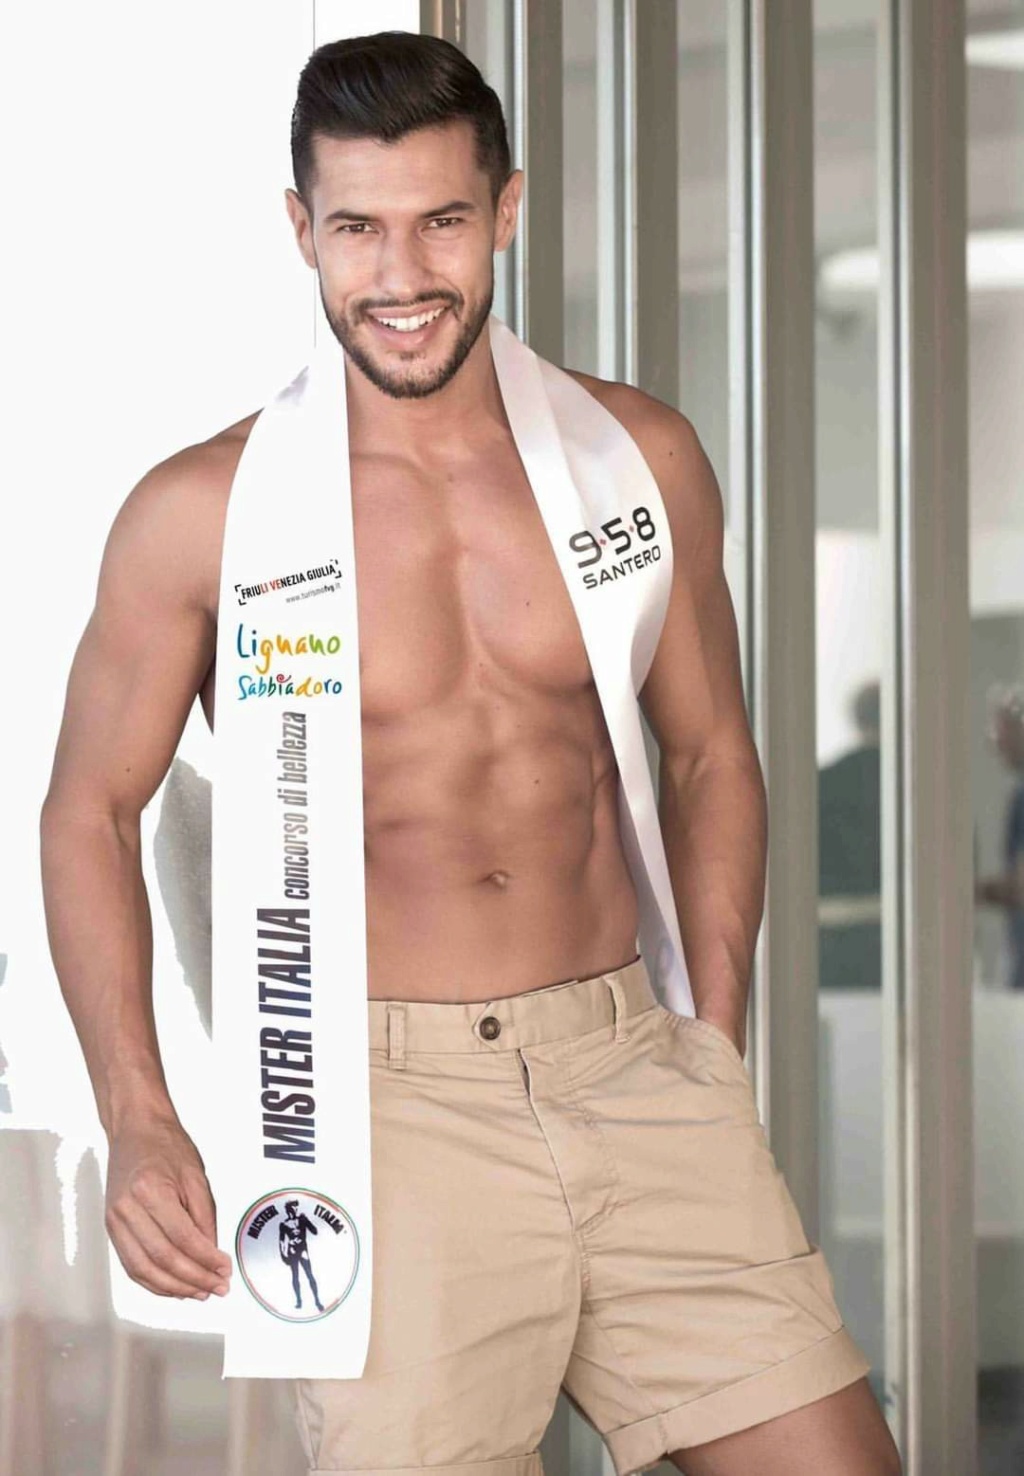 Mister Italia 2019 Rudy El Kholti